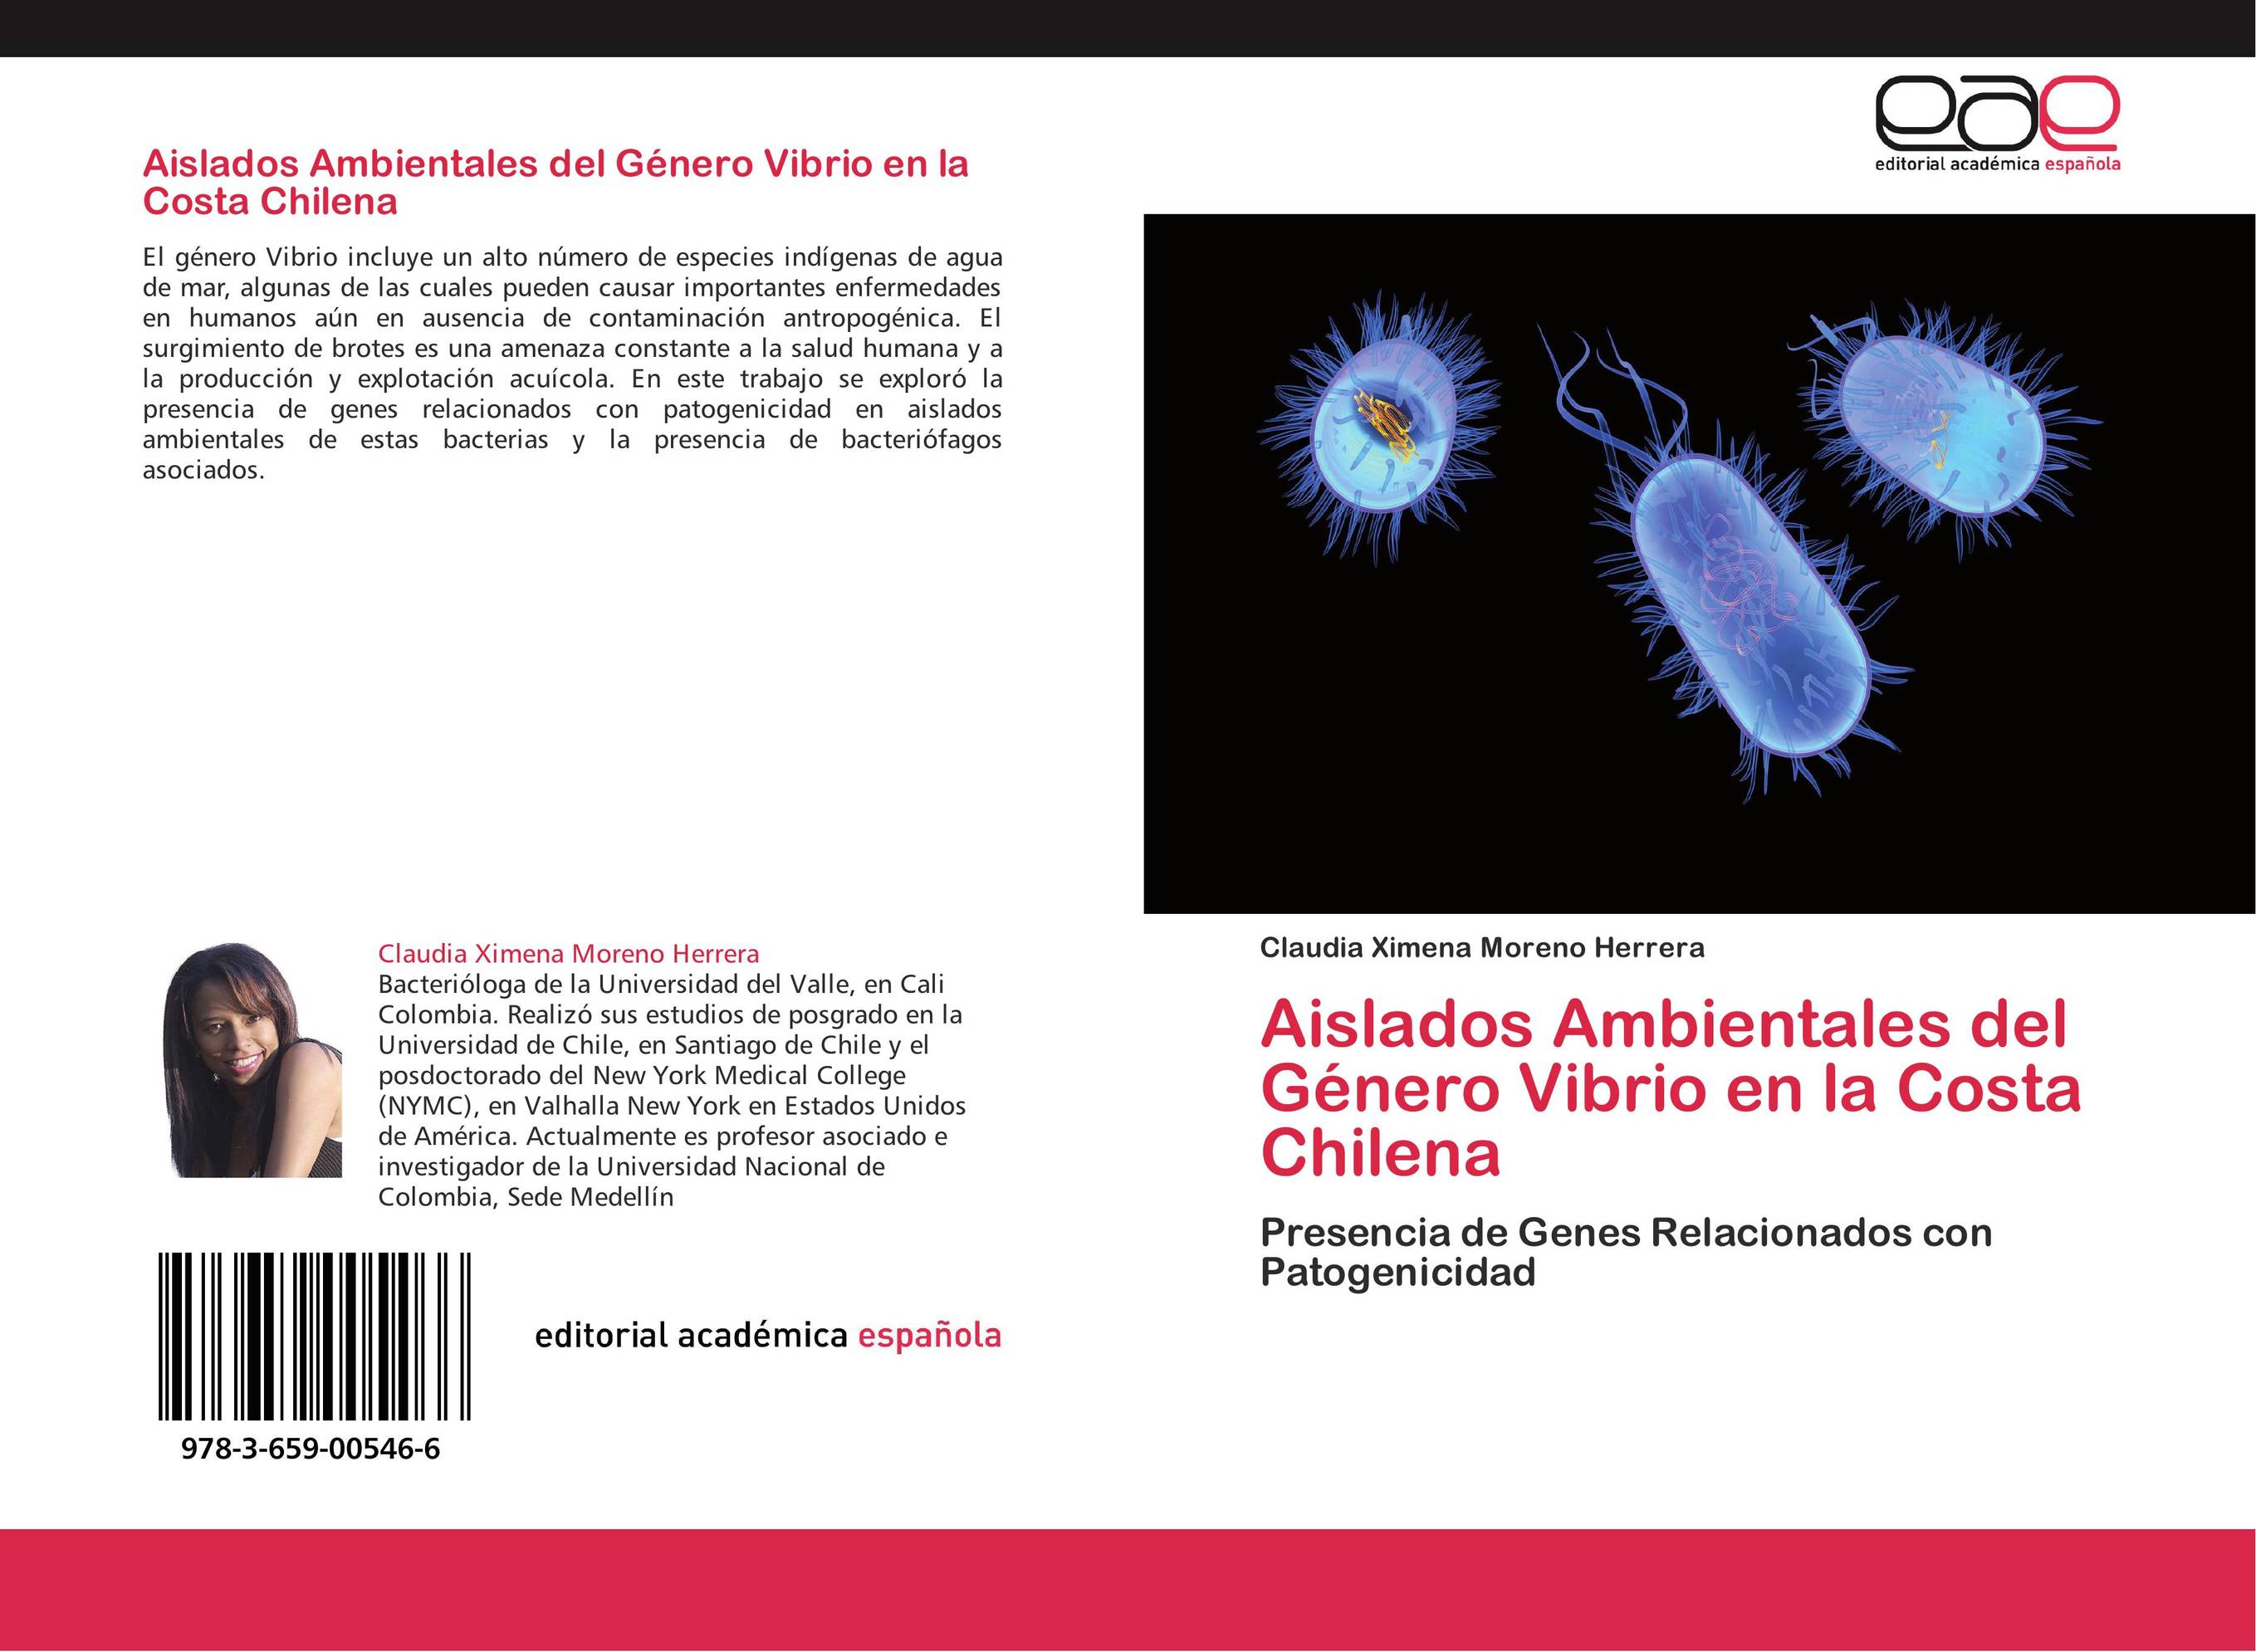 Aislados Ambientales del Género Vibrio en la Costa Chilena